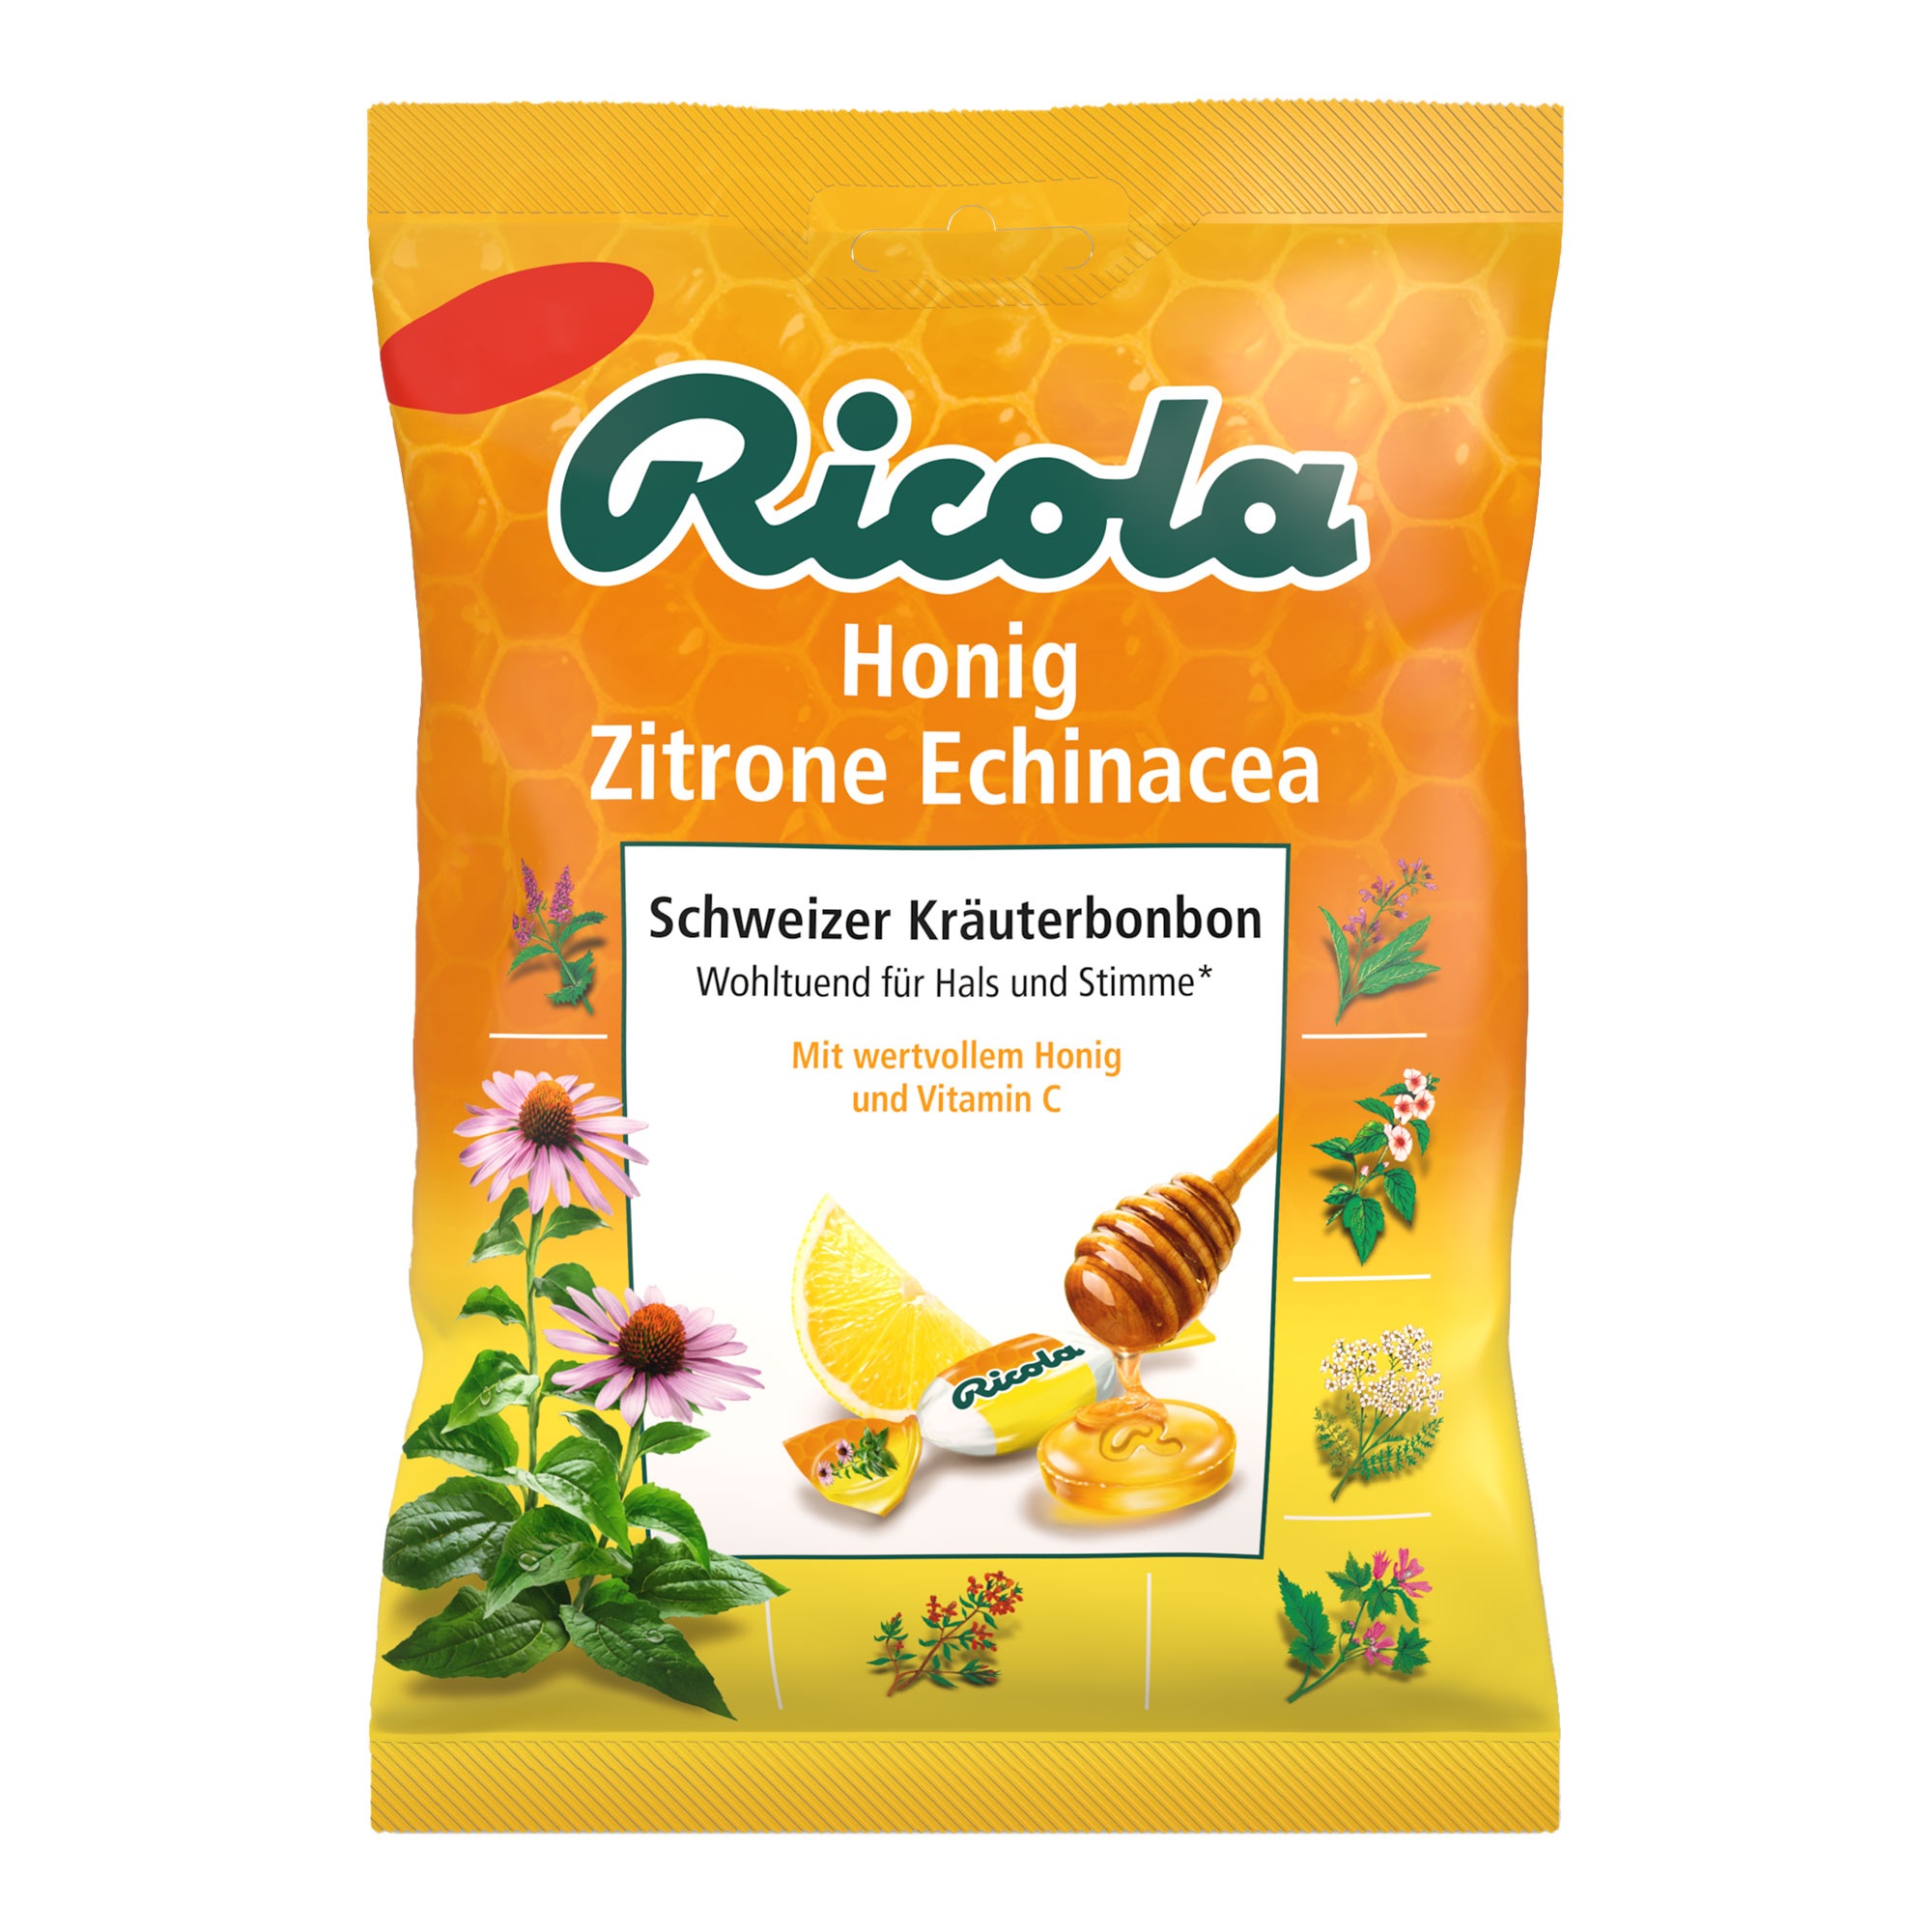 Schweizer Kräuterbonbons mit süß-bitterem Geschmack nach Echinacea, Honig und Zitrone.